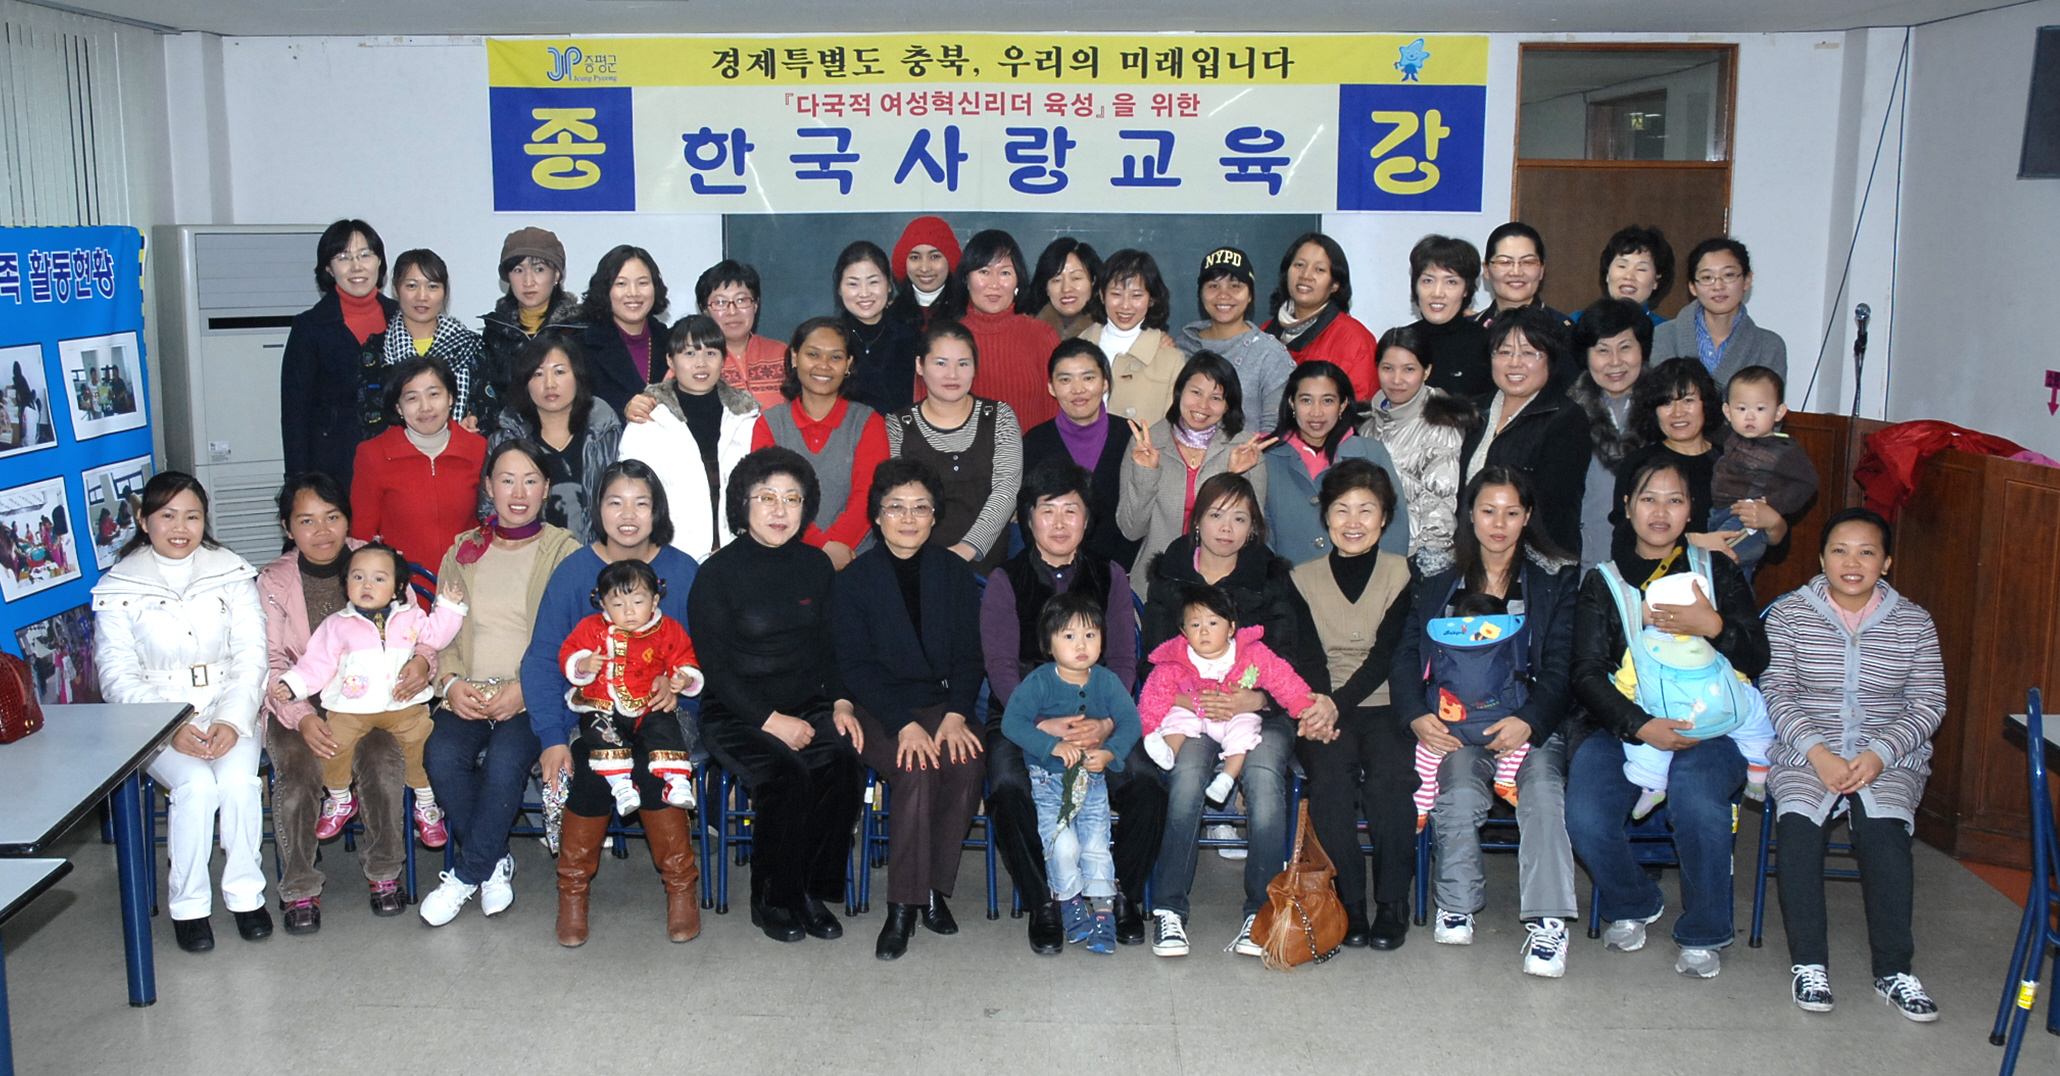 결혼이민자 한국사랑교육 종강